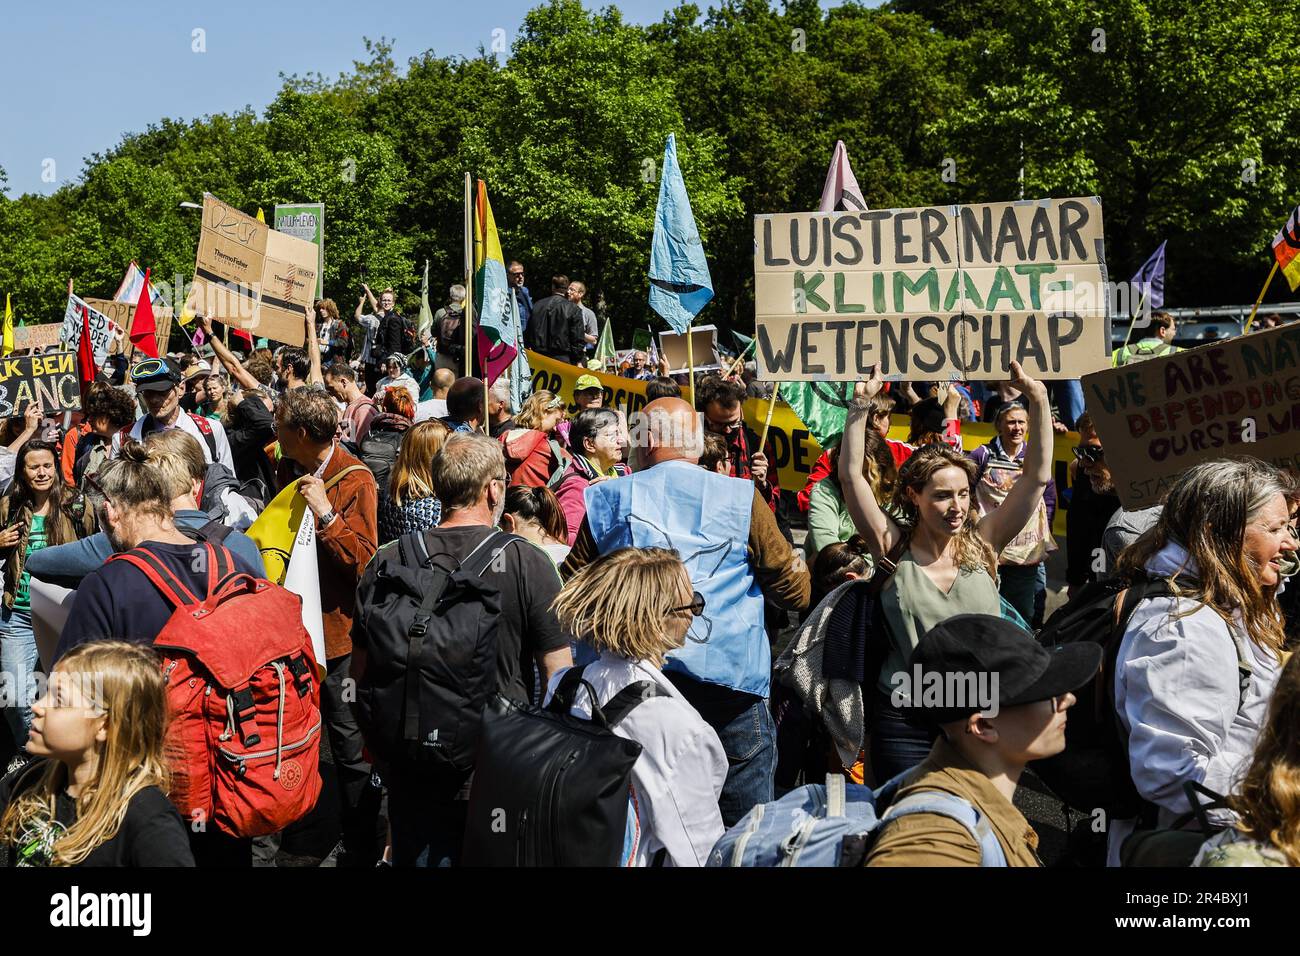 DEN HAAG - Rebellion-Aktivisten sind auf dem Weg zum siebten Mal während einer Demonstration, um die A12 in Den Haag zu blockieren. Mit dieser Aktion lehnt XR Subventionen für fossile Brennstoffe ab. Während der jüngsten Blockade am 11. März wurden etwa 700 Aktivisten festgenommen. ANP SEM VAN DER WAL netherlands Out - belgien Out Credit: ANP/Alamy Live News Stockfoto